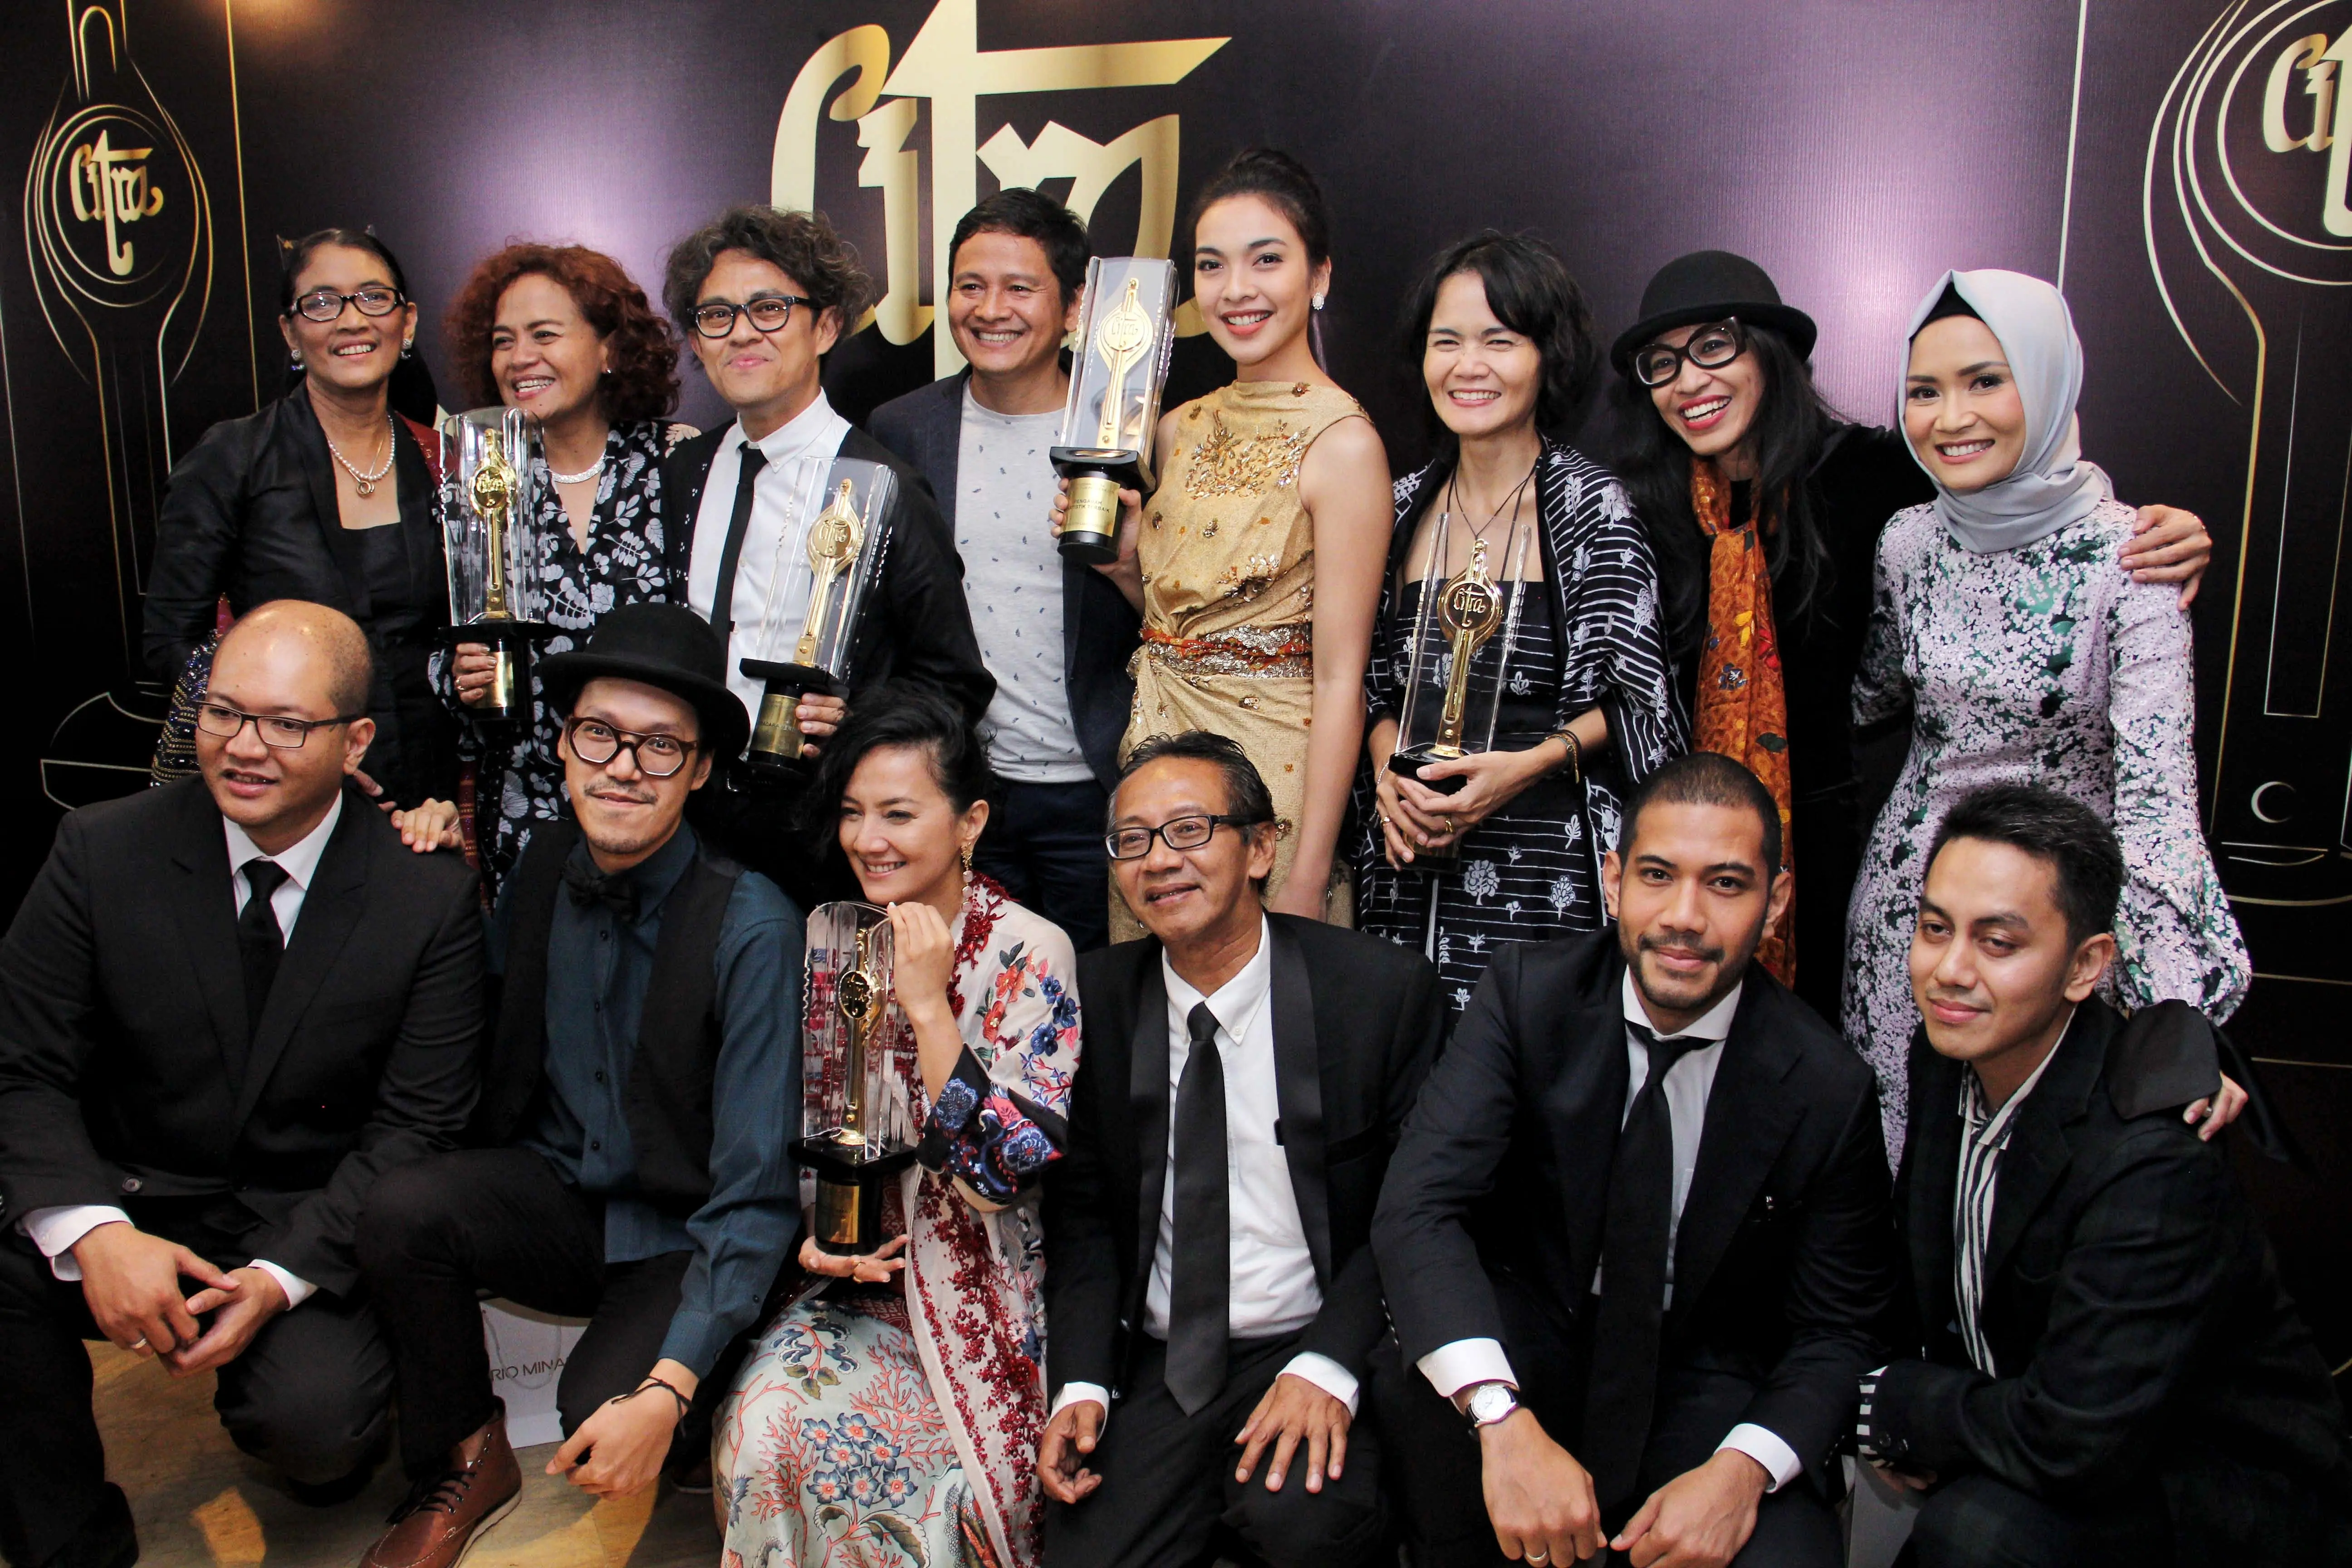 Ajang penganugerahan para sineas film Festival Film Indonesia (FFI) 2016 baru saja di gelar. Acara berlangsung di Taman Ismail Marzuki, Jakarta pada Minggu (6/11). (Adrian Putra/Bintang.com)